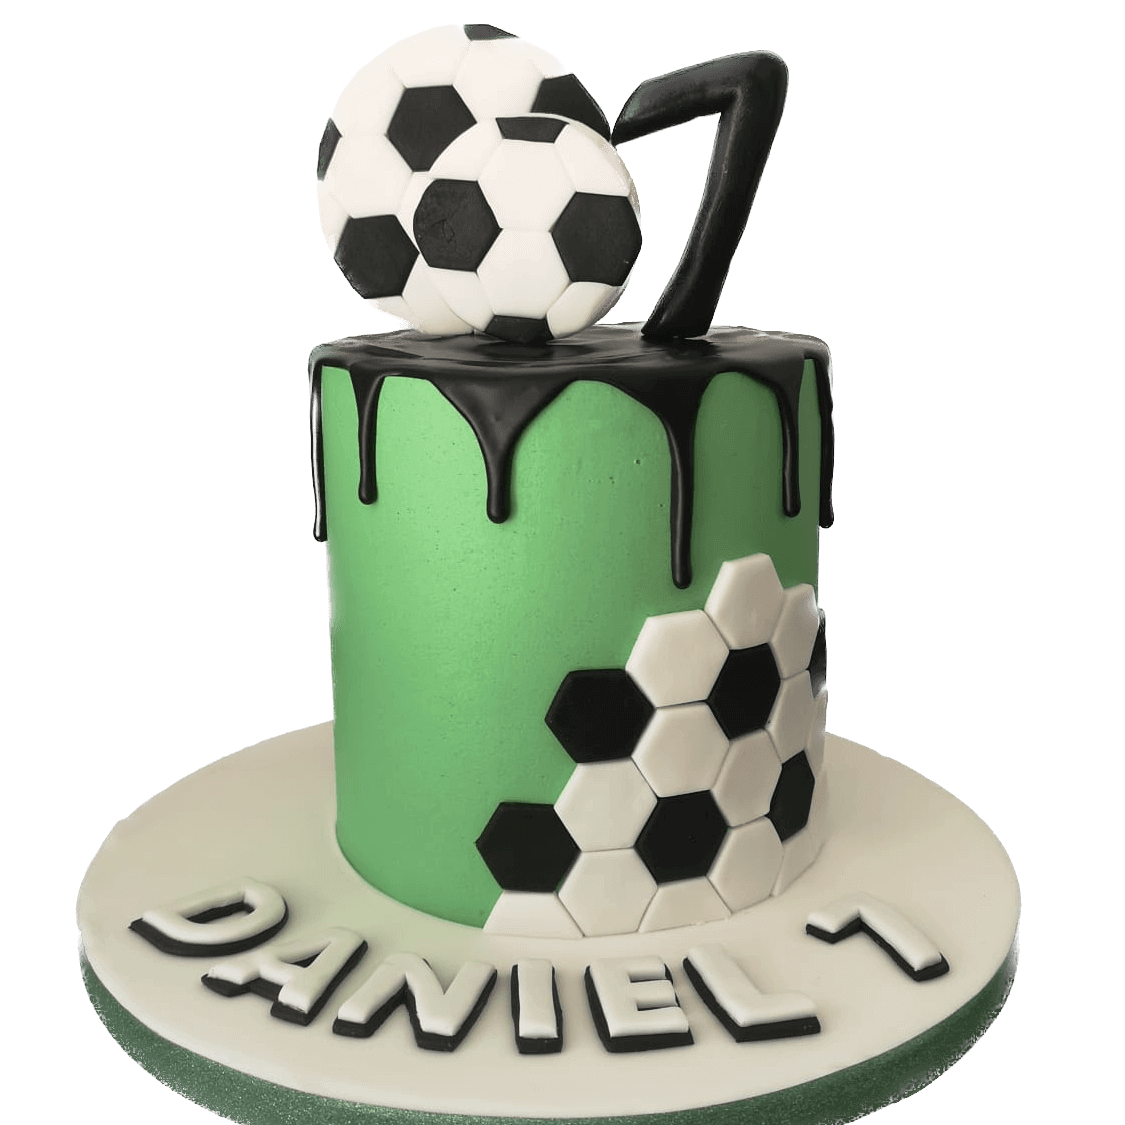 Football Fan Cake in Fondant - Fastest Cakes